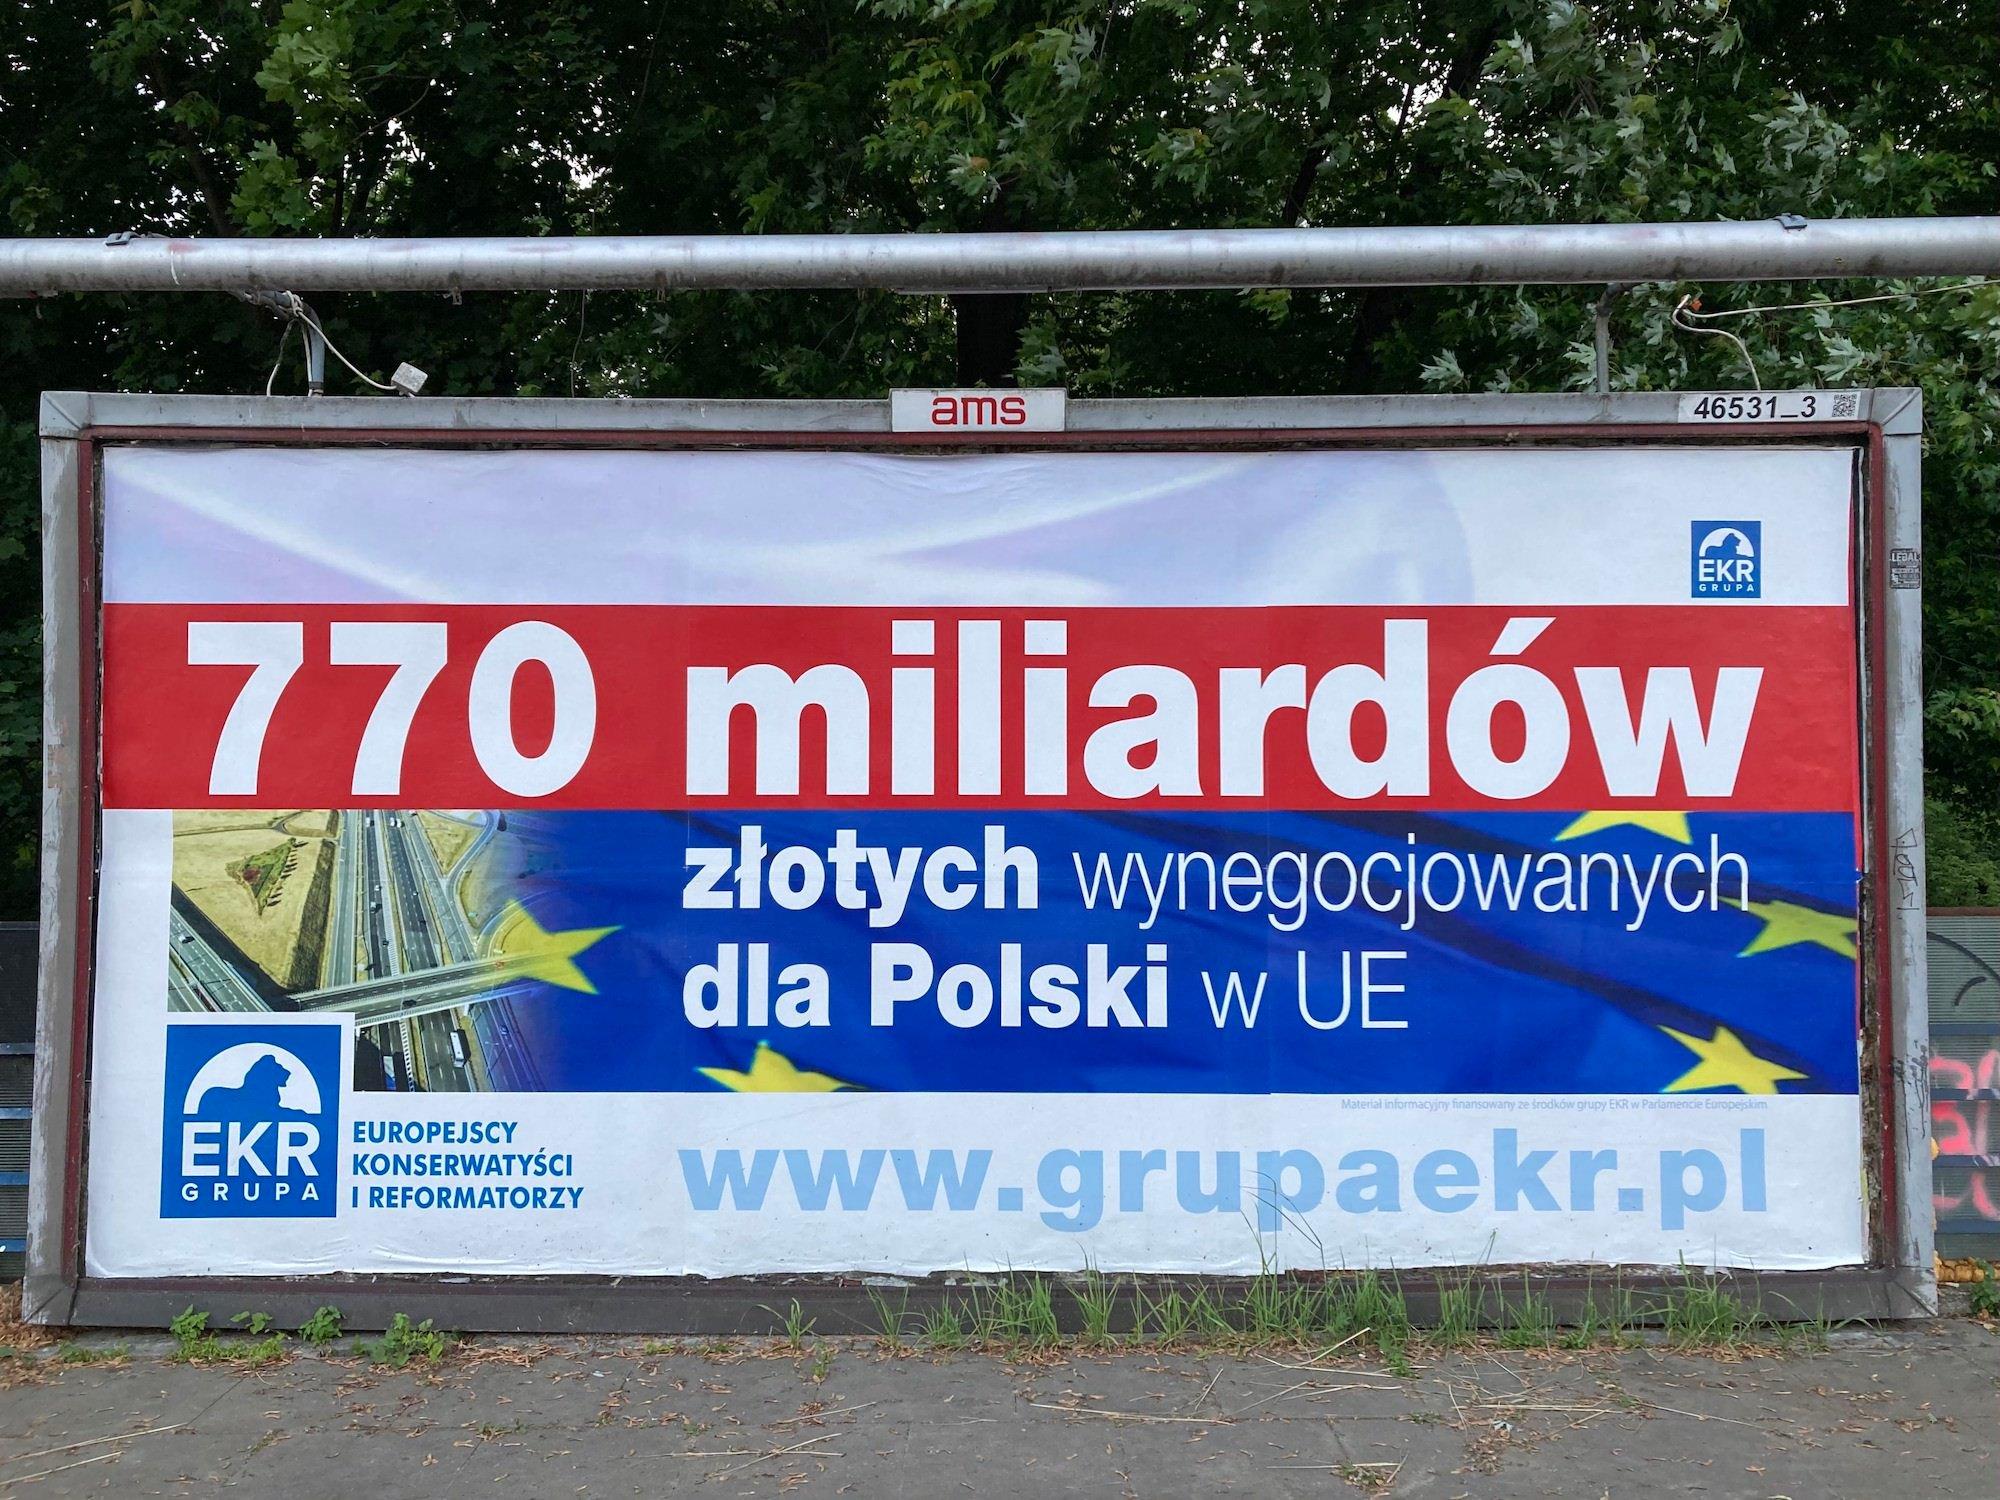 Billboard EKR 770 mld złotych dla Polski